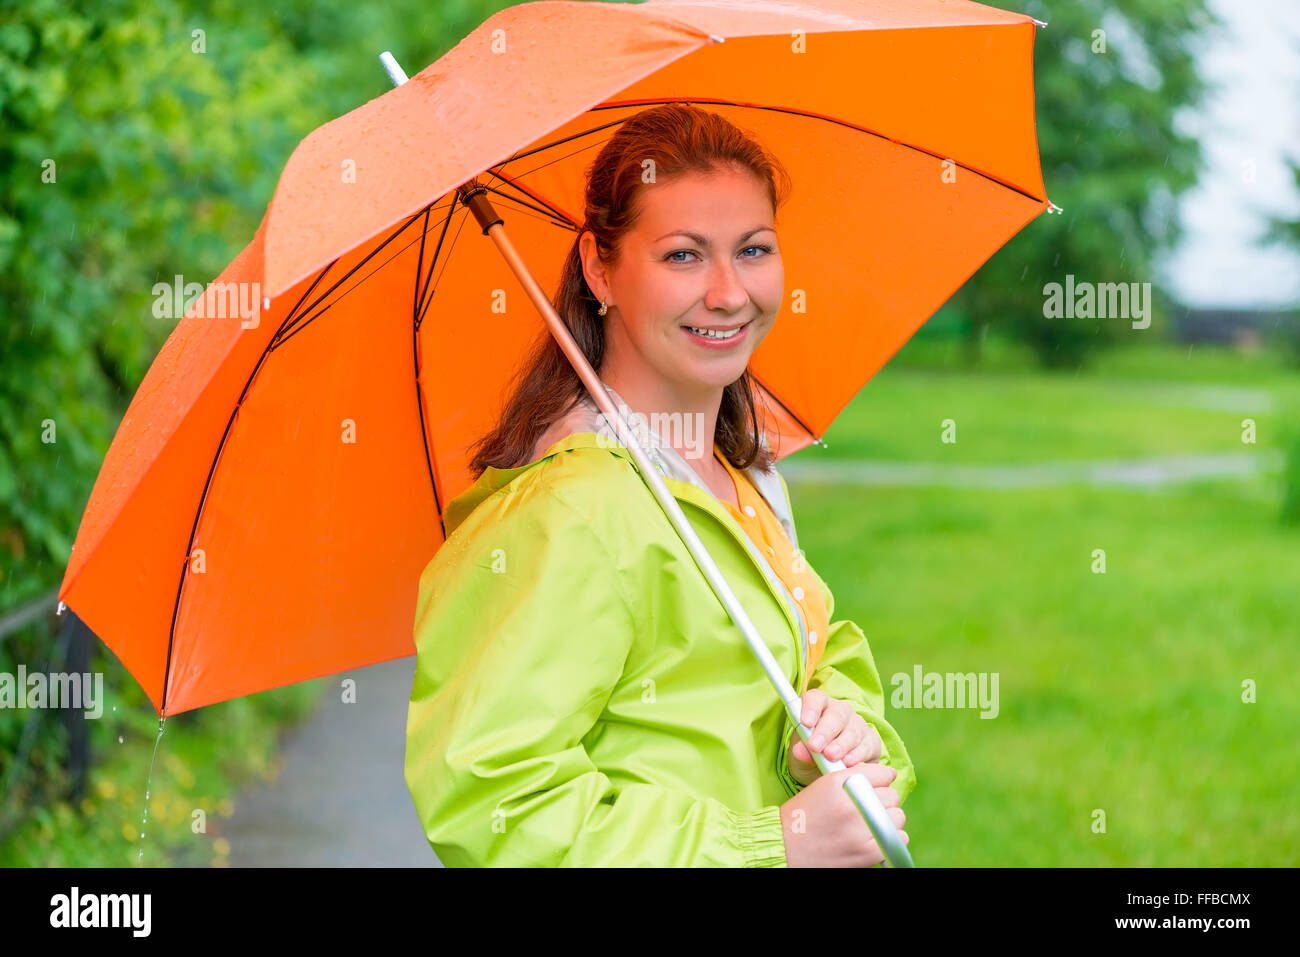 30-j hrige lächelndes Mädchen hält ein Dach unter dem Regen Stockfoto